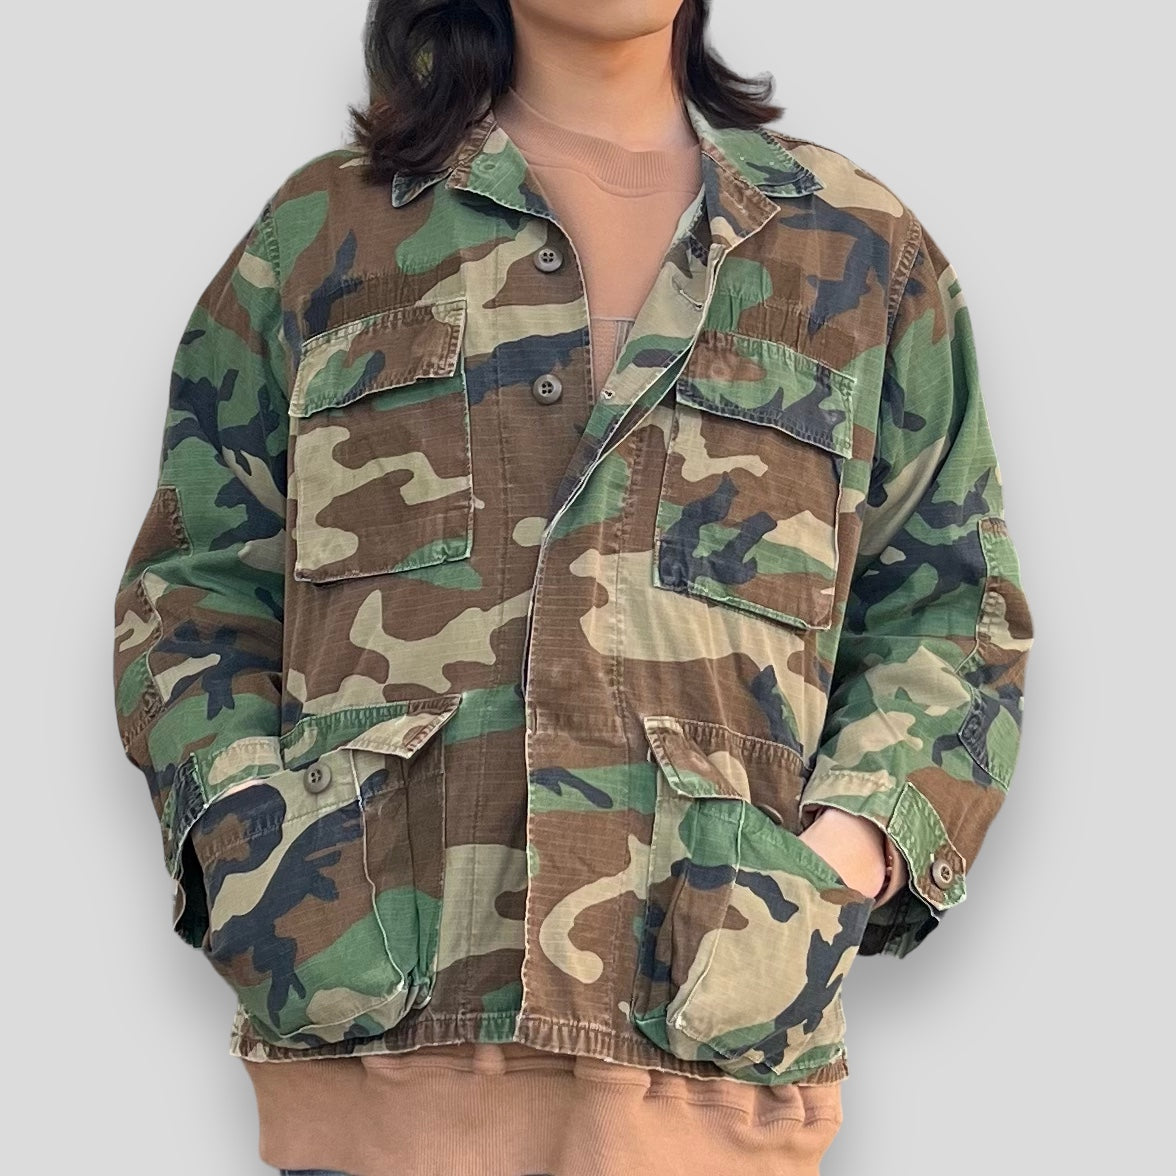 Vintage U.S Military Jacket